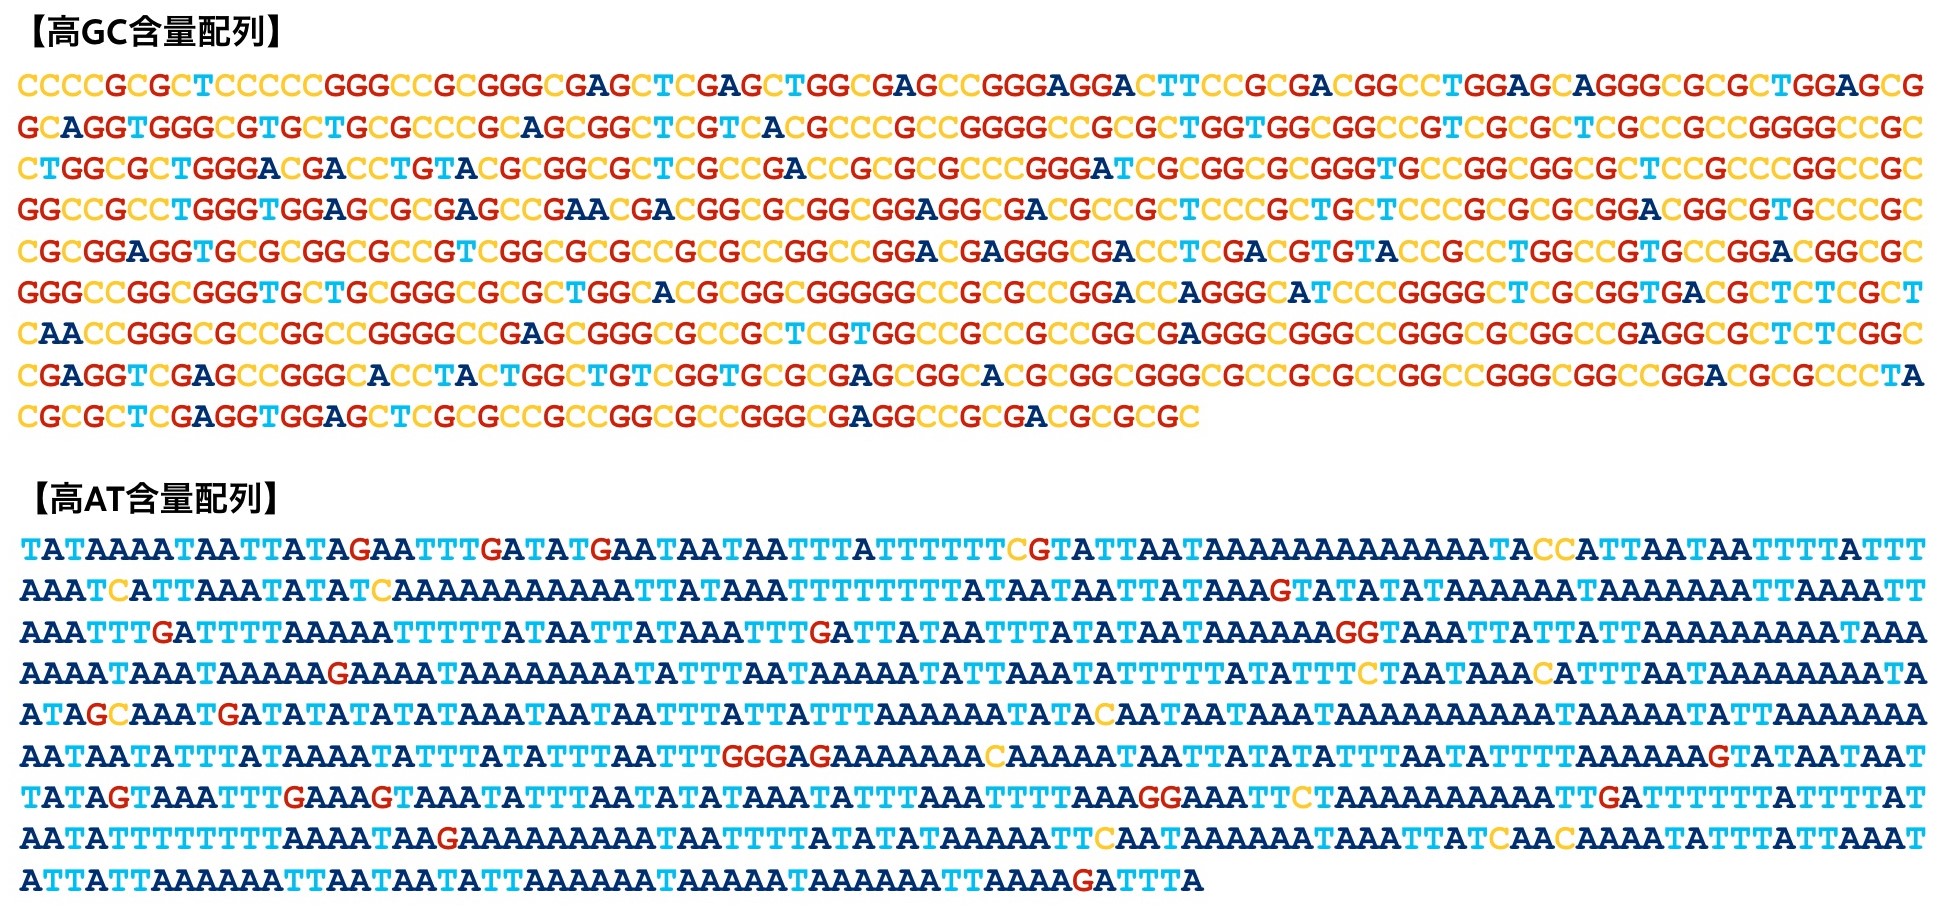 特許技術で成功した難合成性DNAの合成成功例